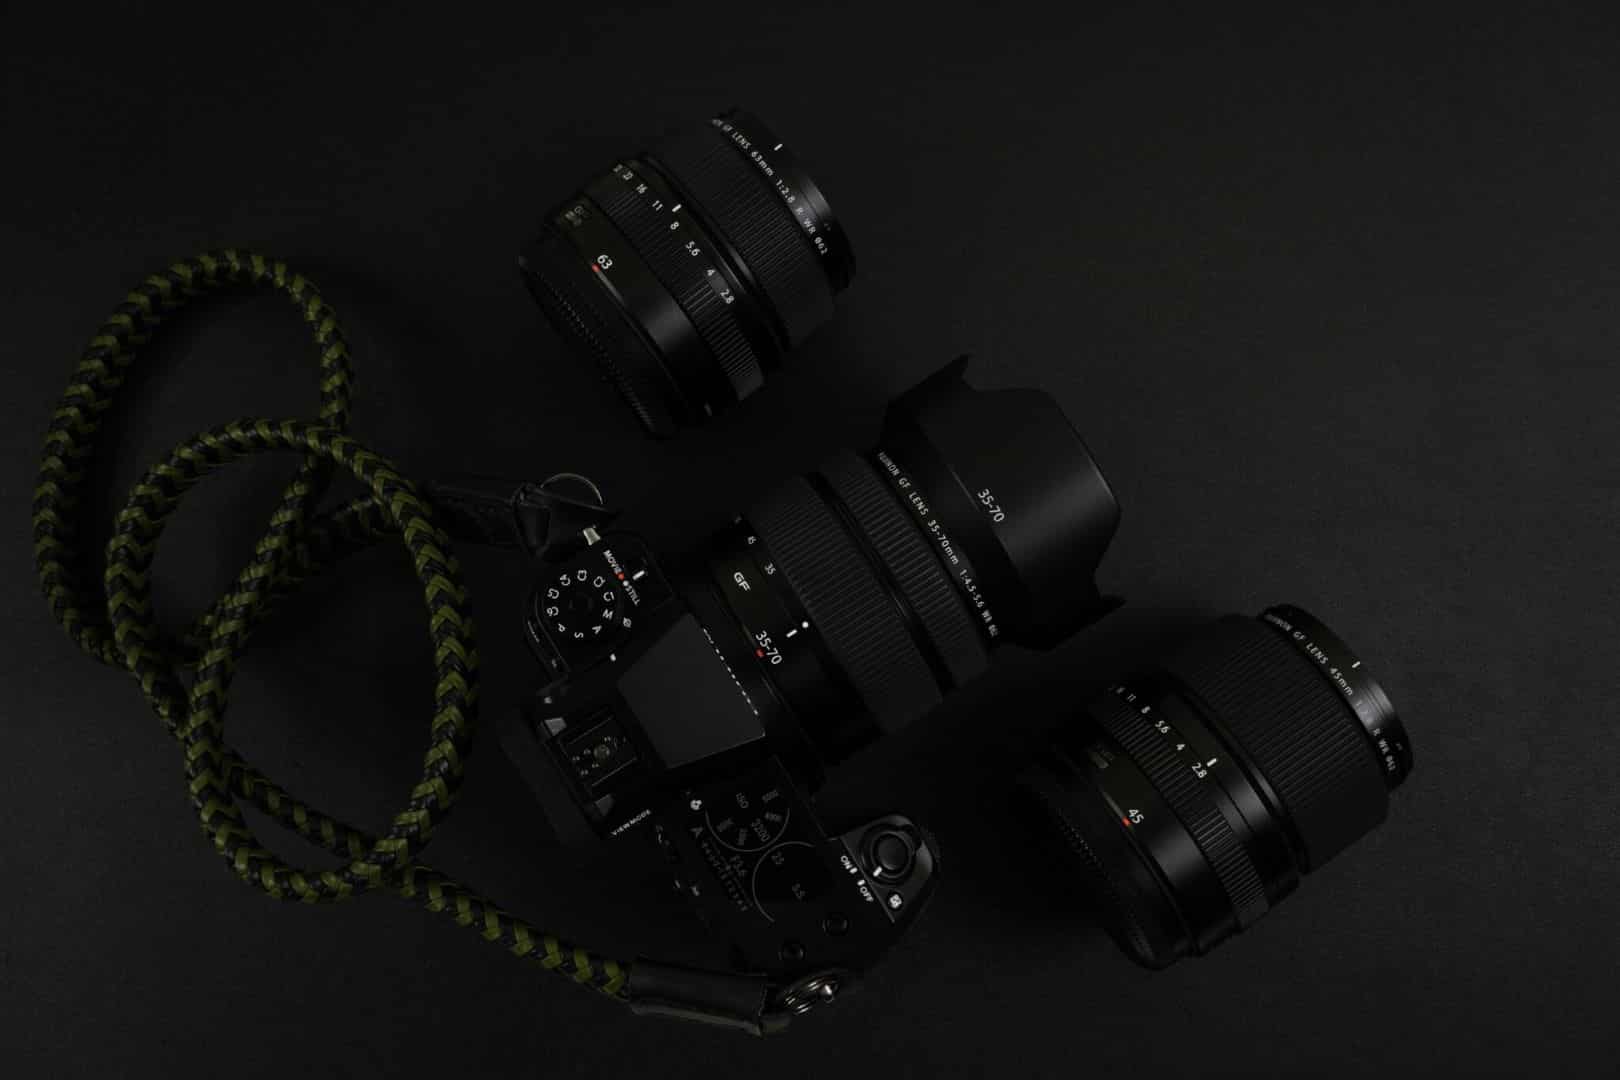 Ống kính Fujinon GF 20-35mm F4 có thể sẽ ra mắt vào 9/9